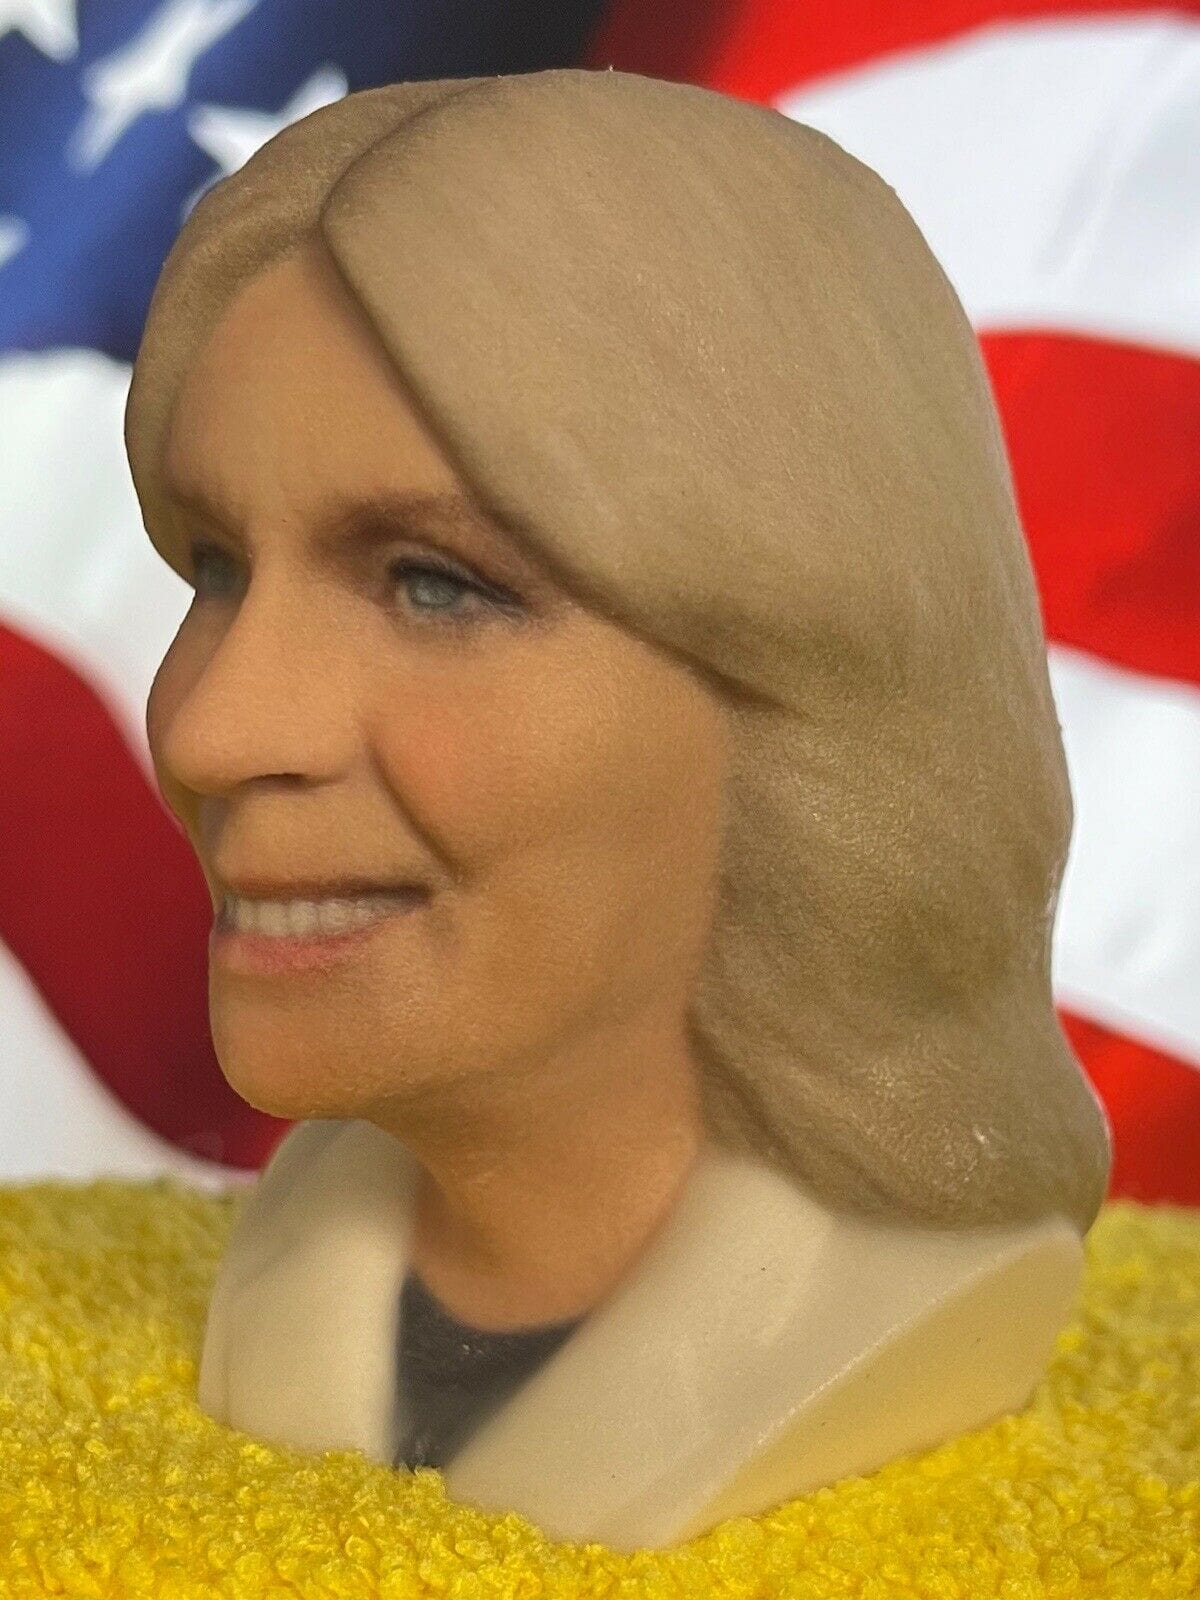 Jill &amp; Joe Biden Bust Statues Presidential Collectibles